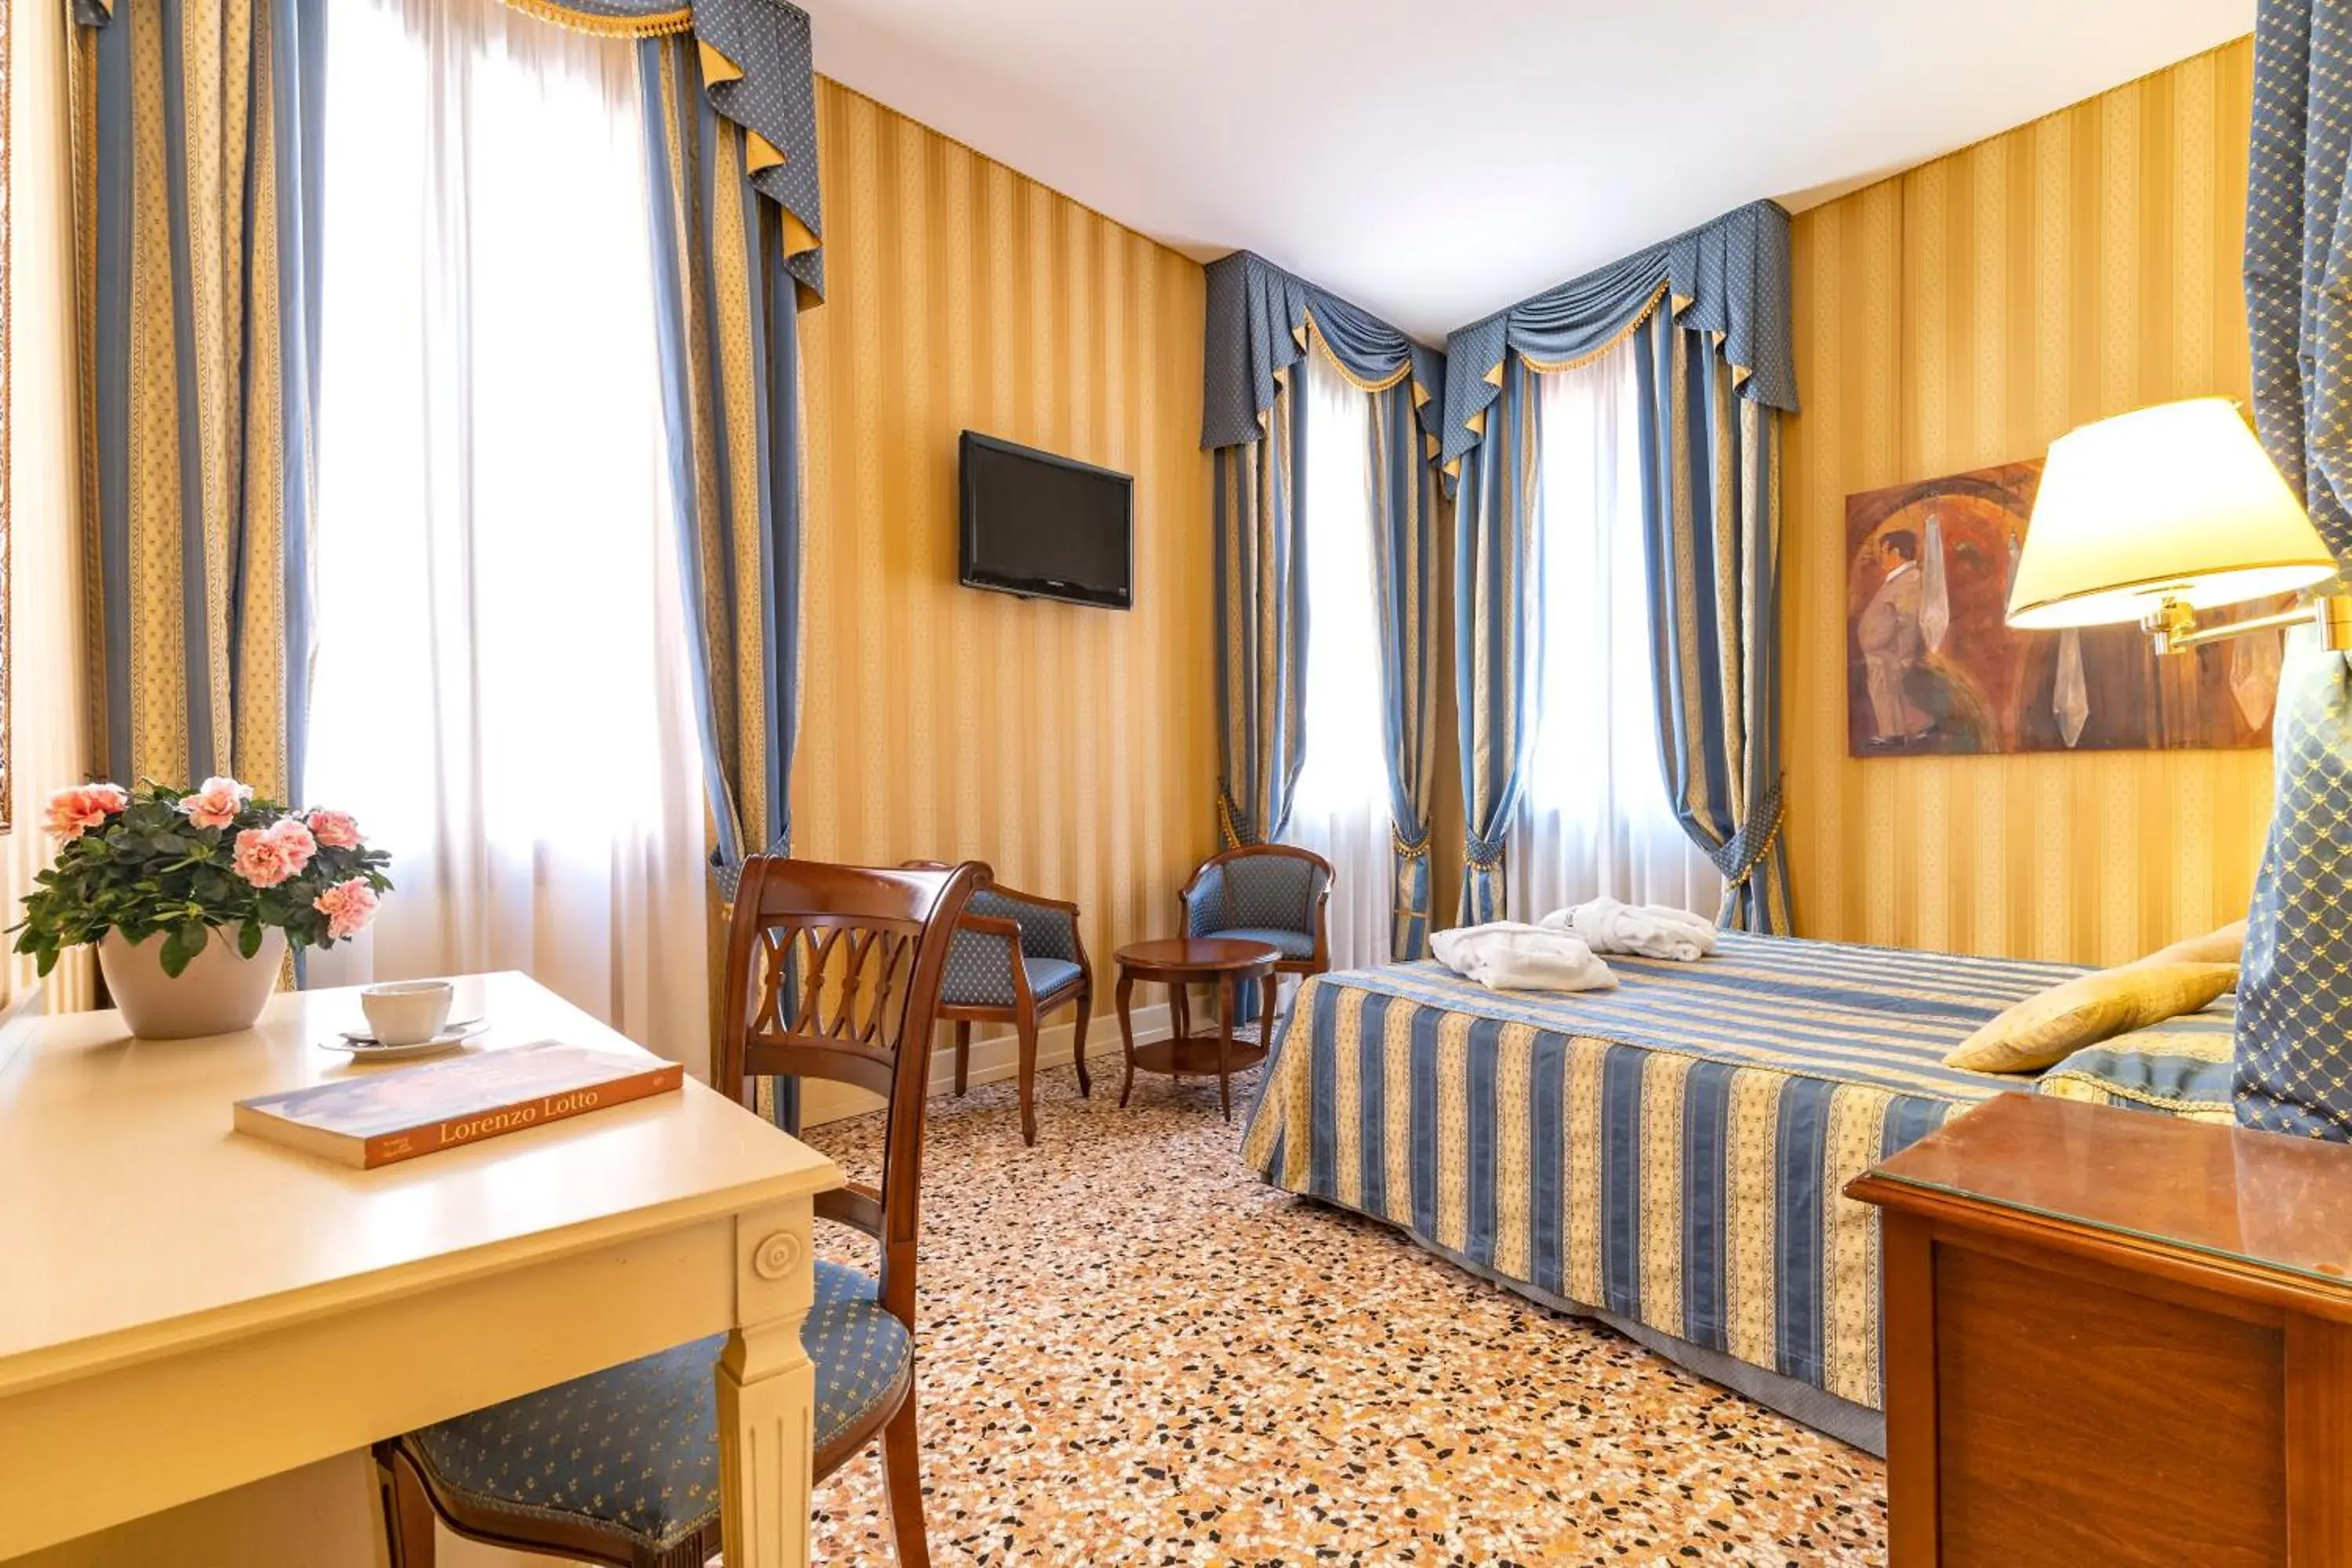 Photo of the whole room in Hotel Bella Venezia